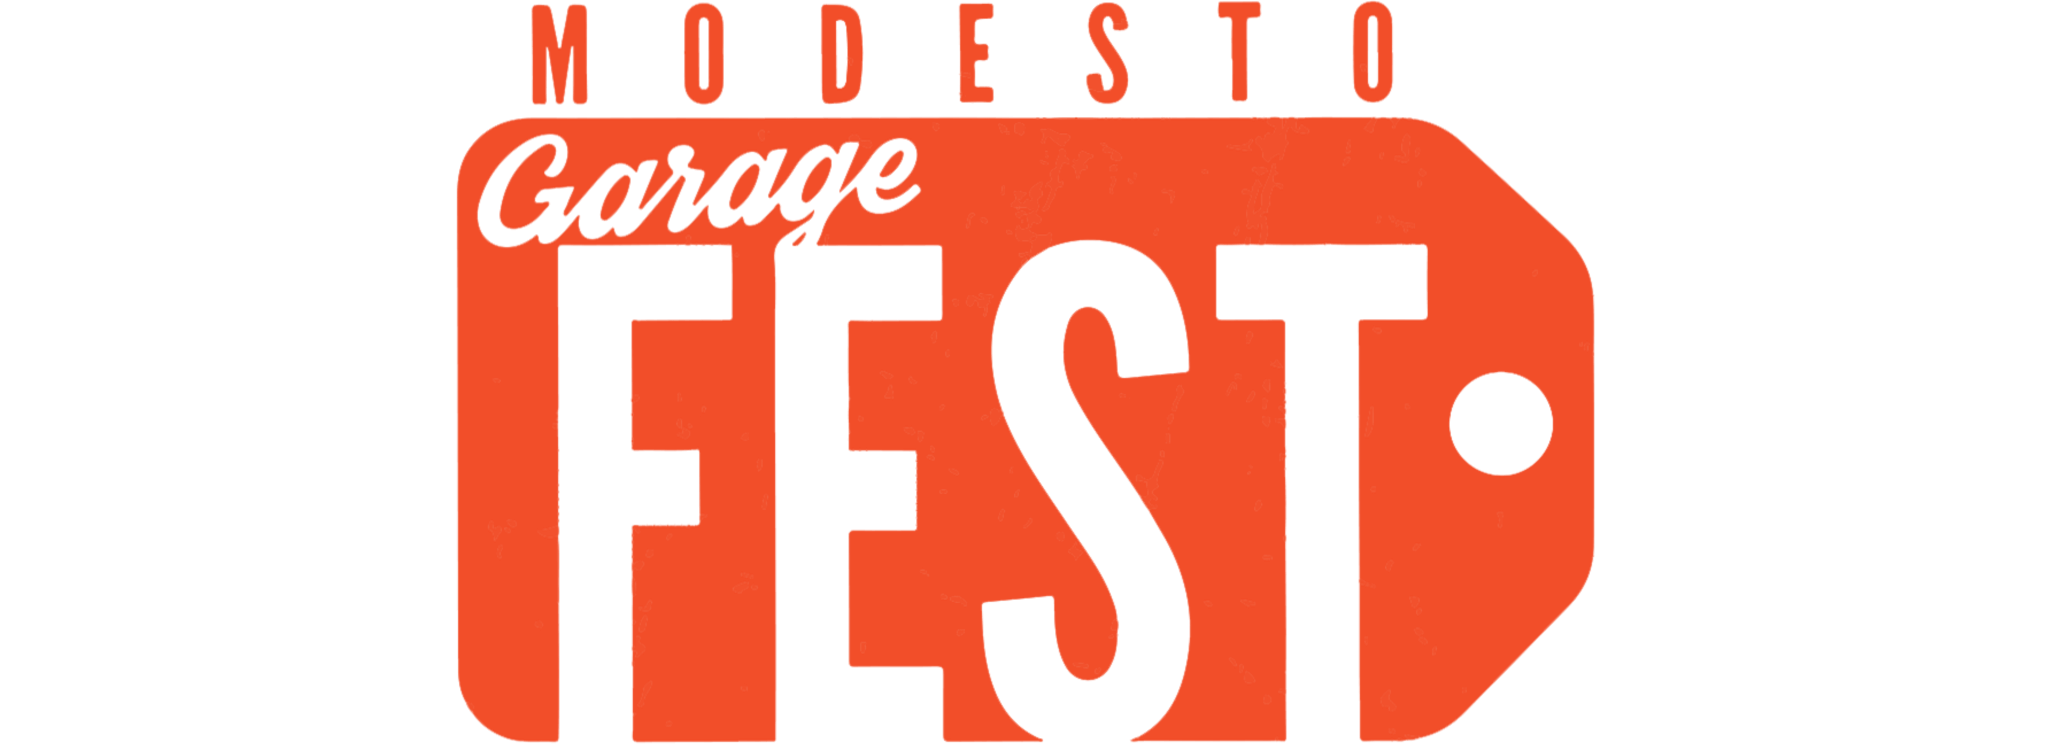 Modesto GarageFest